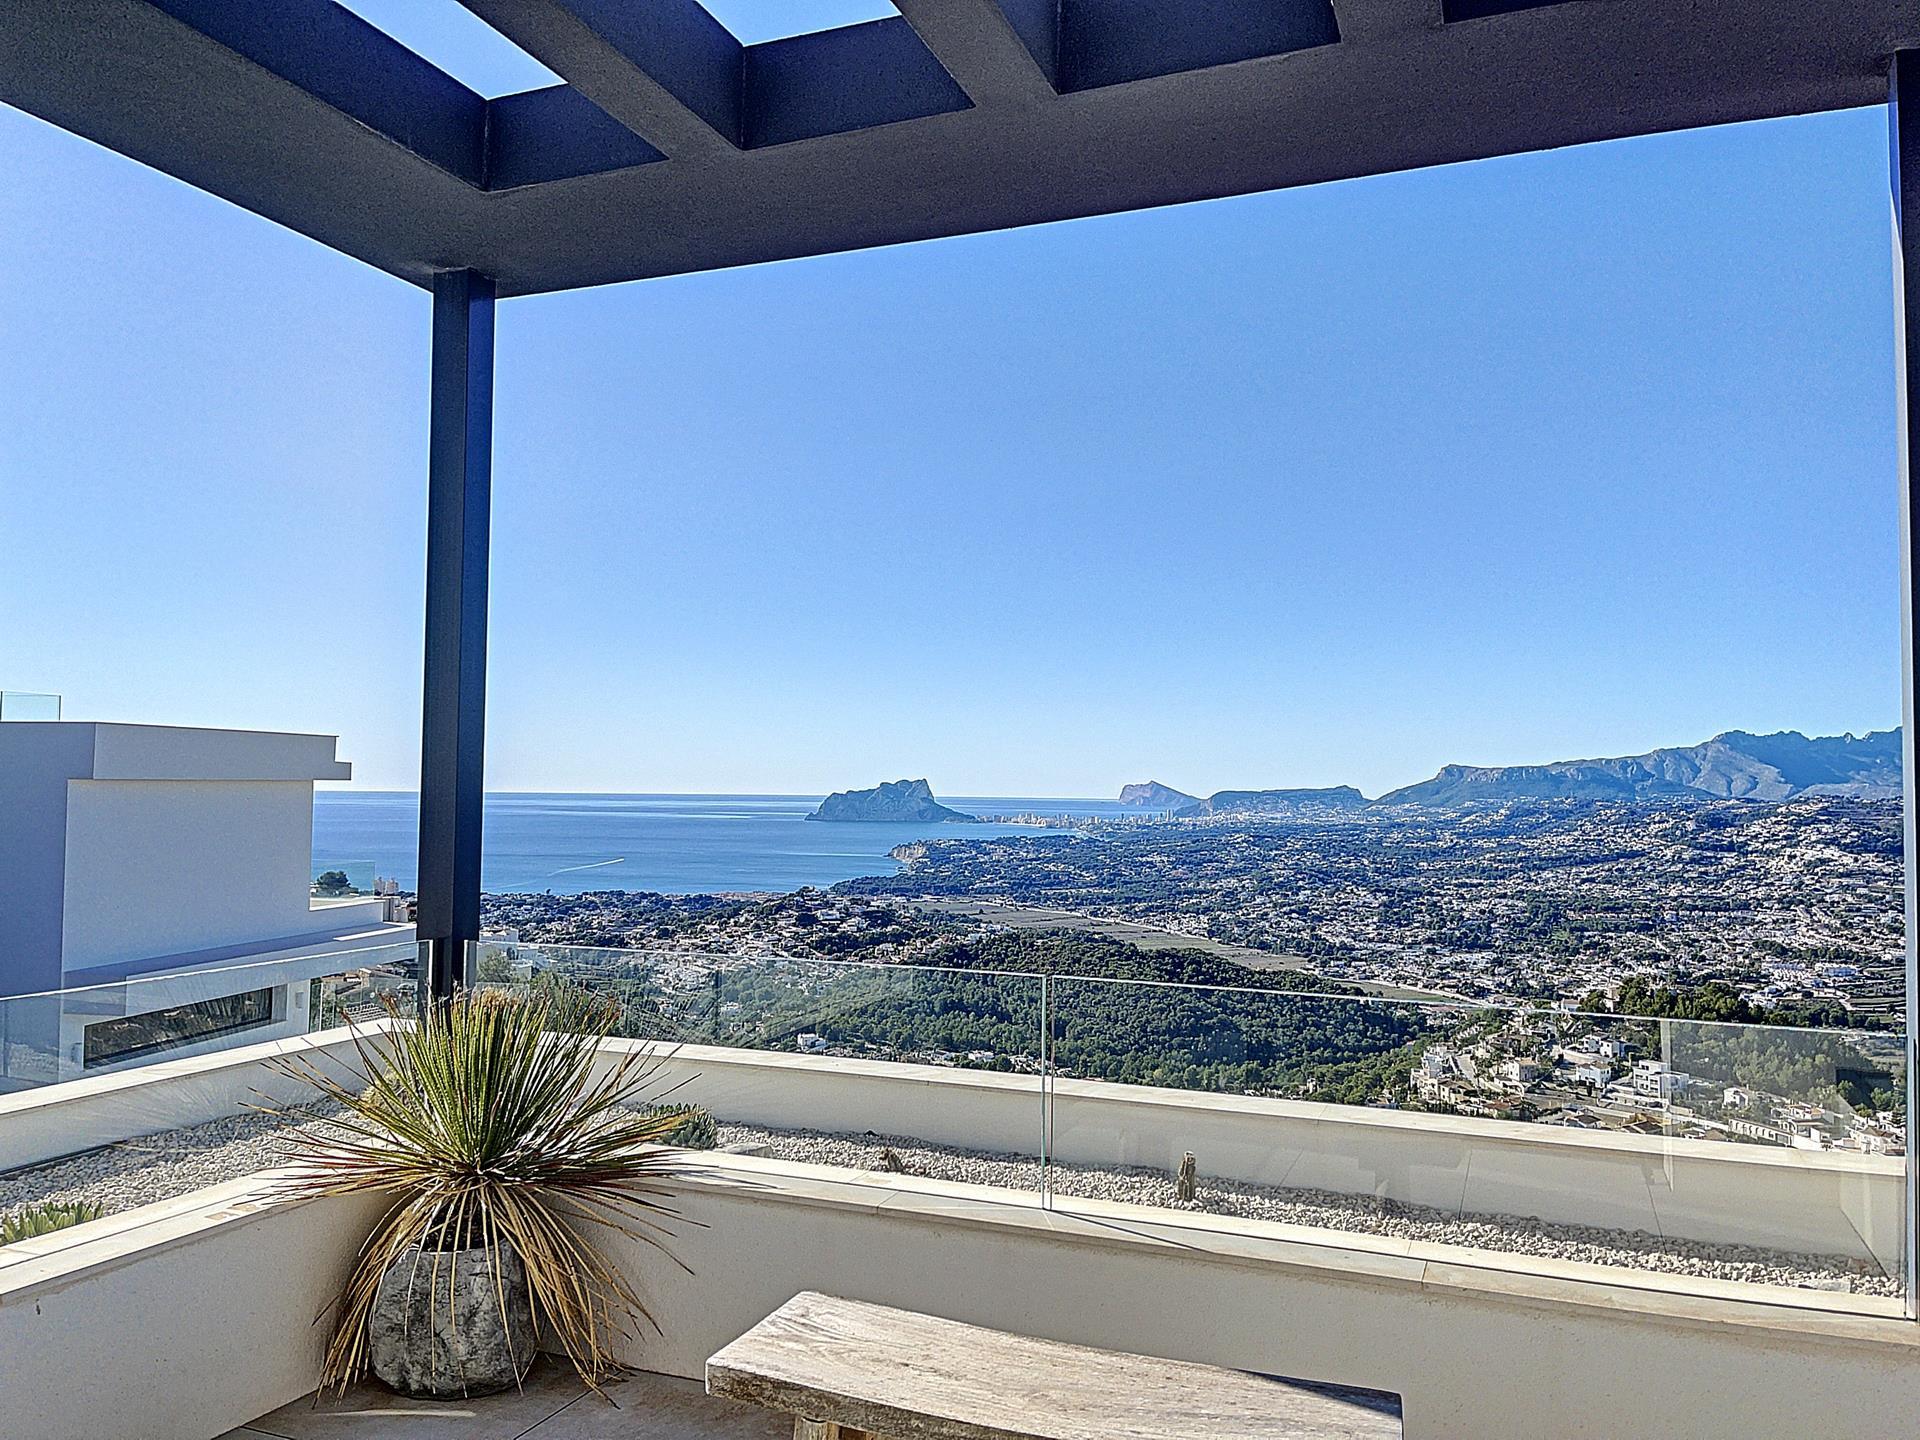 Luxury villa with stunning sea views